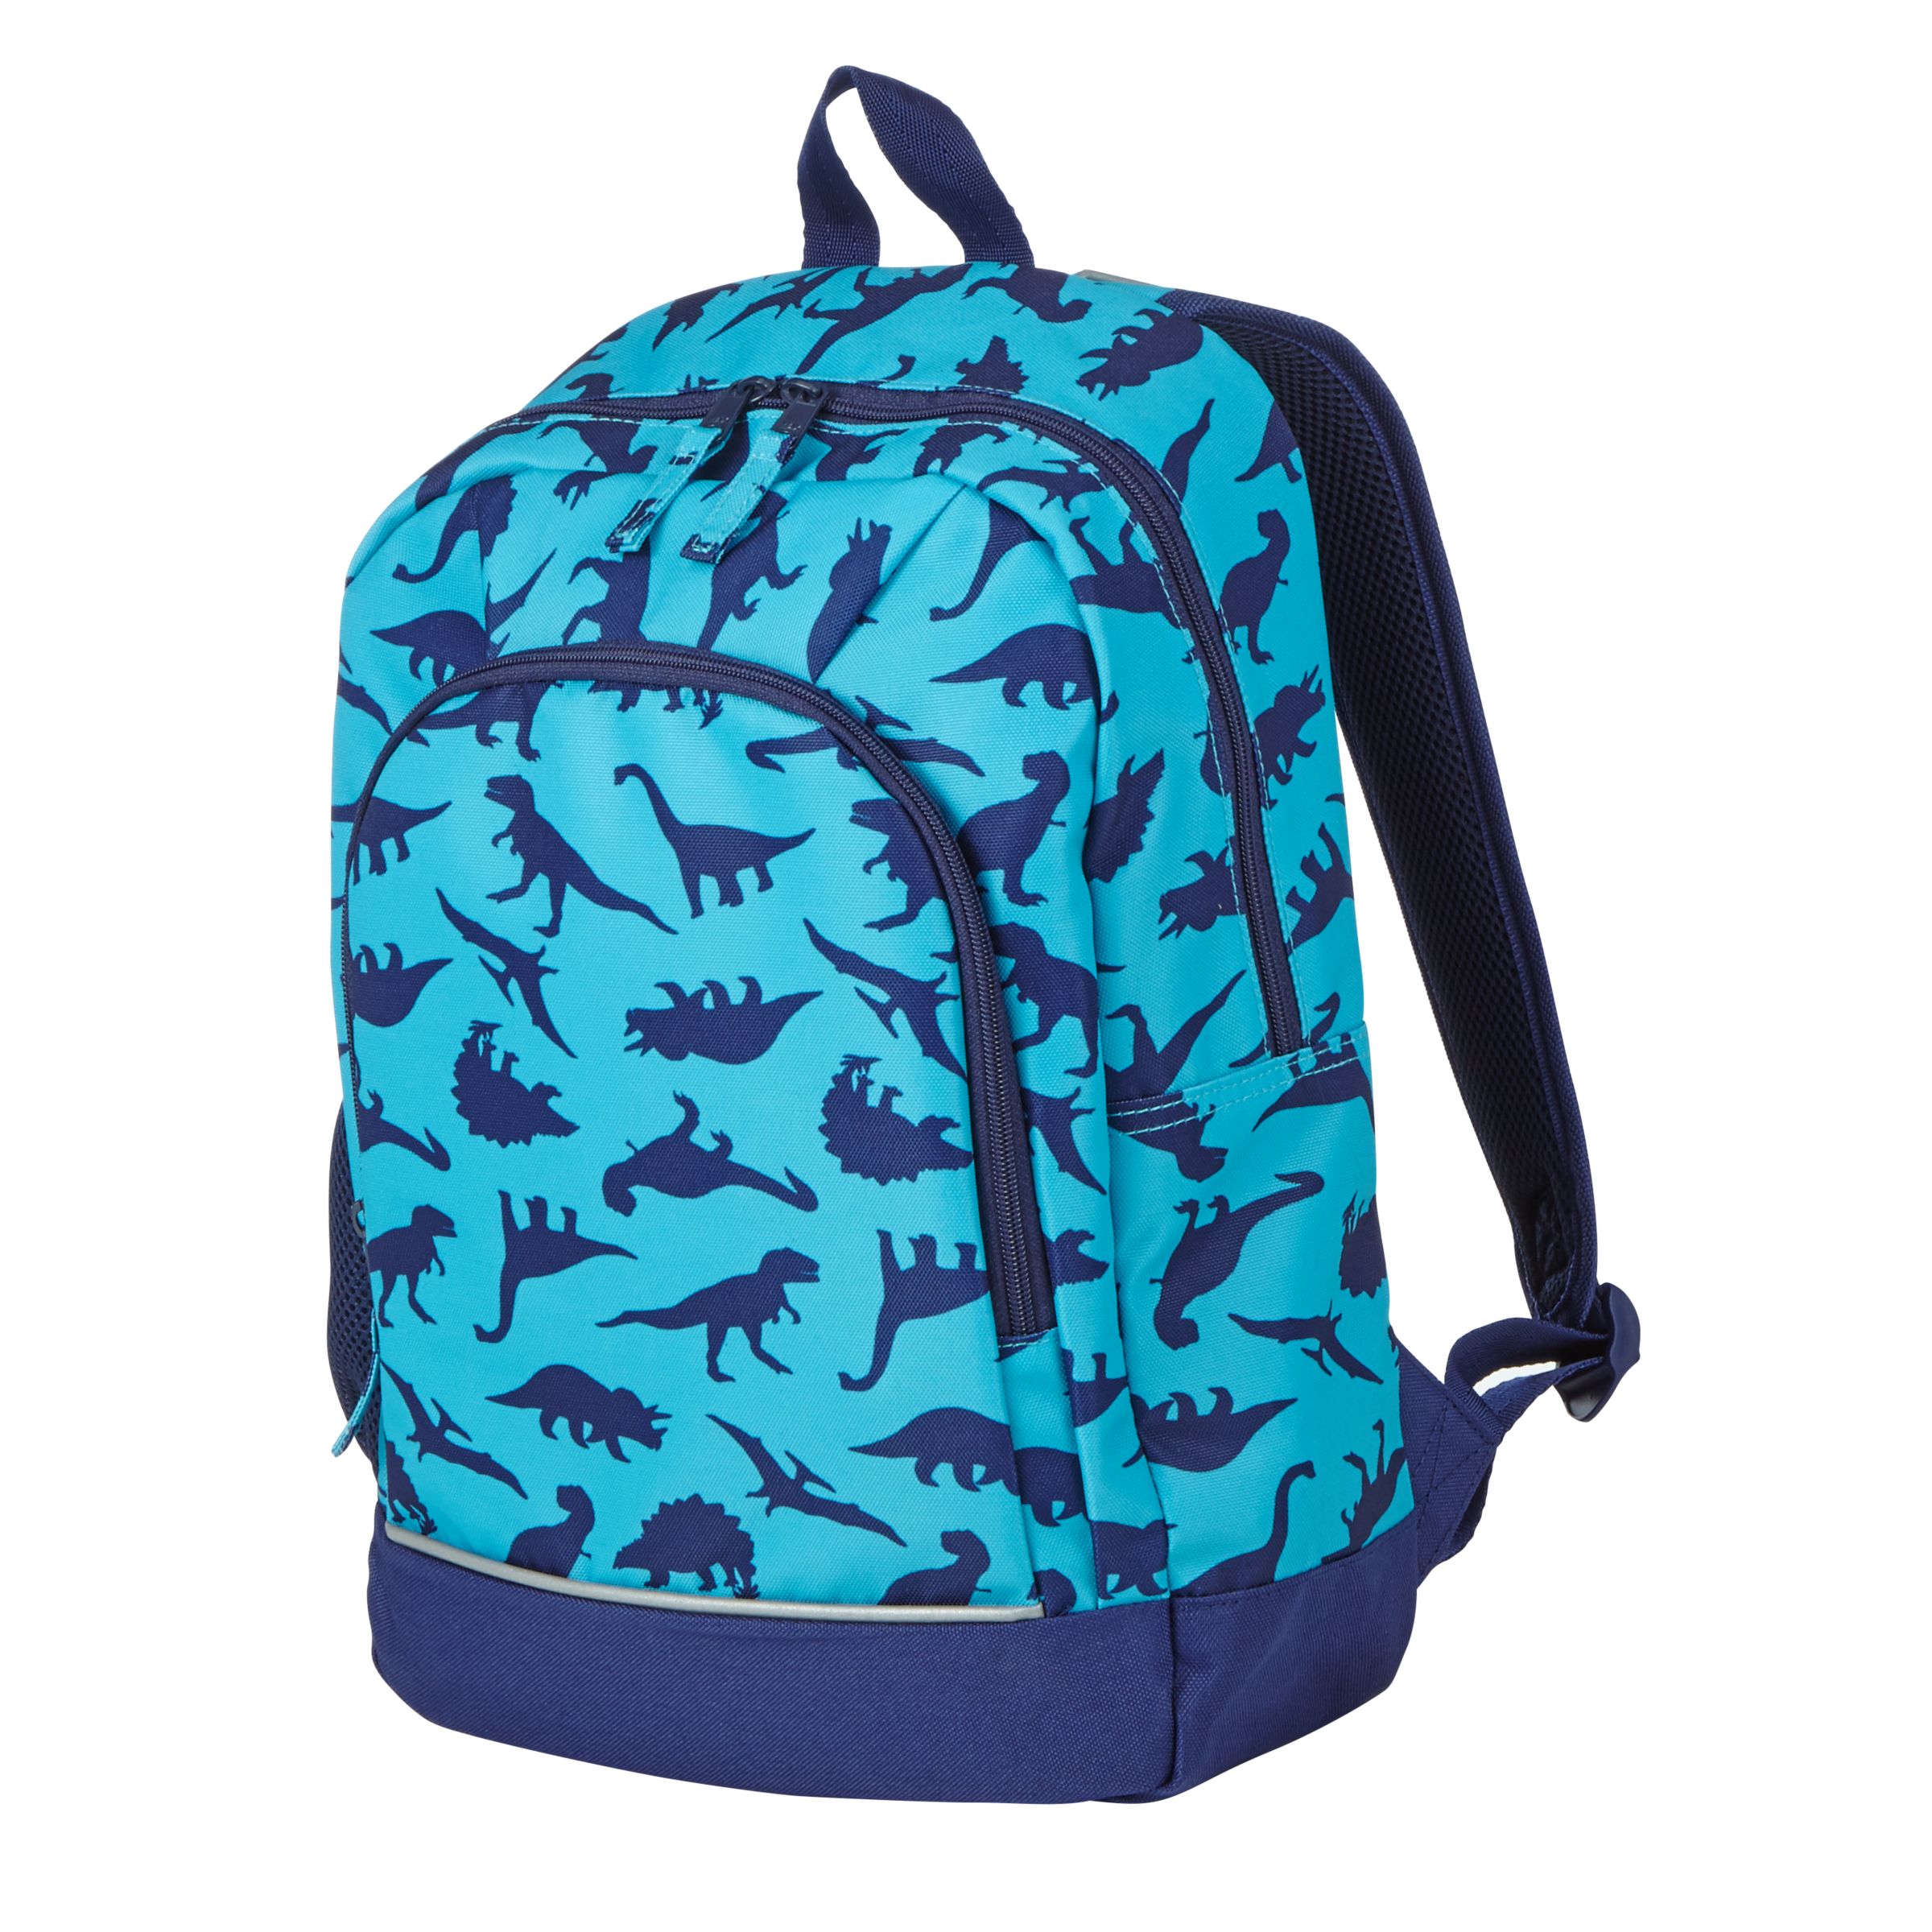 Buy John Lewis Children's Dinosaur School Backpack, Blue | John Lewis